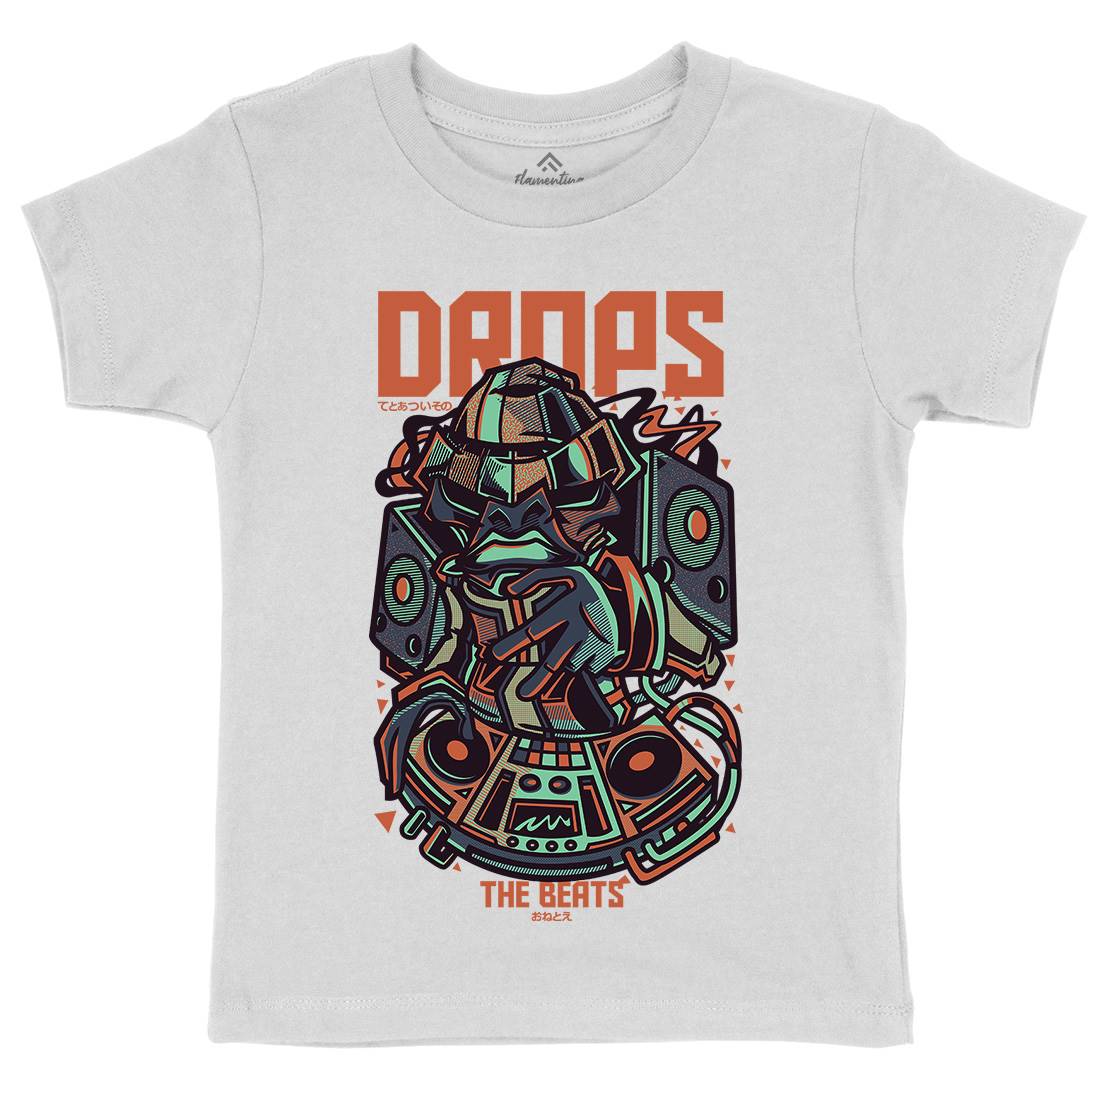 Drops Beats Kids Organic Crew Neck T-Shirt Music D761